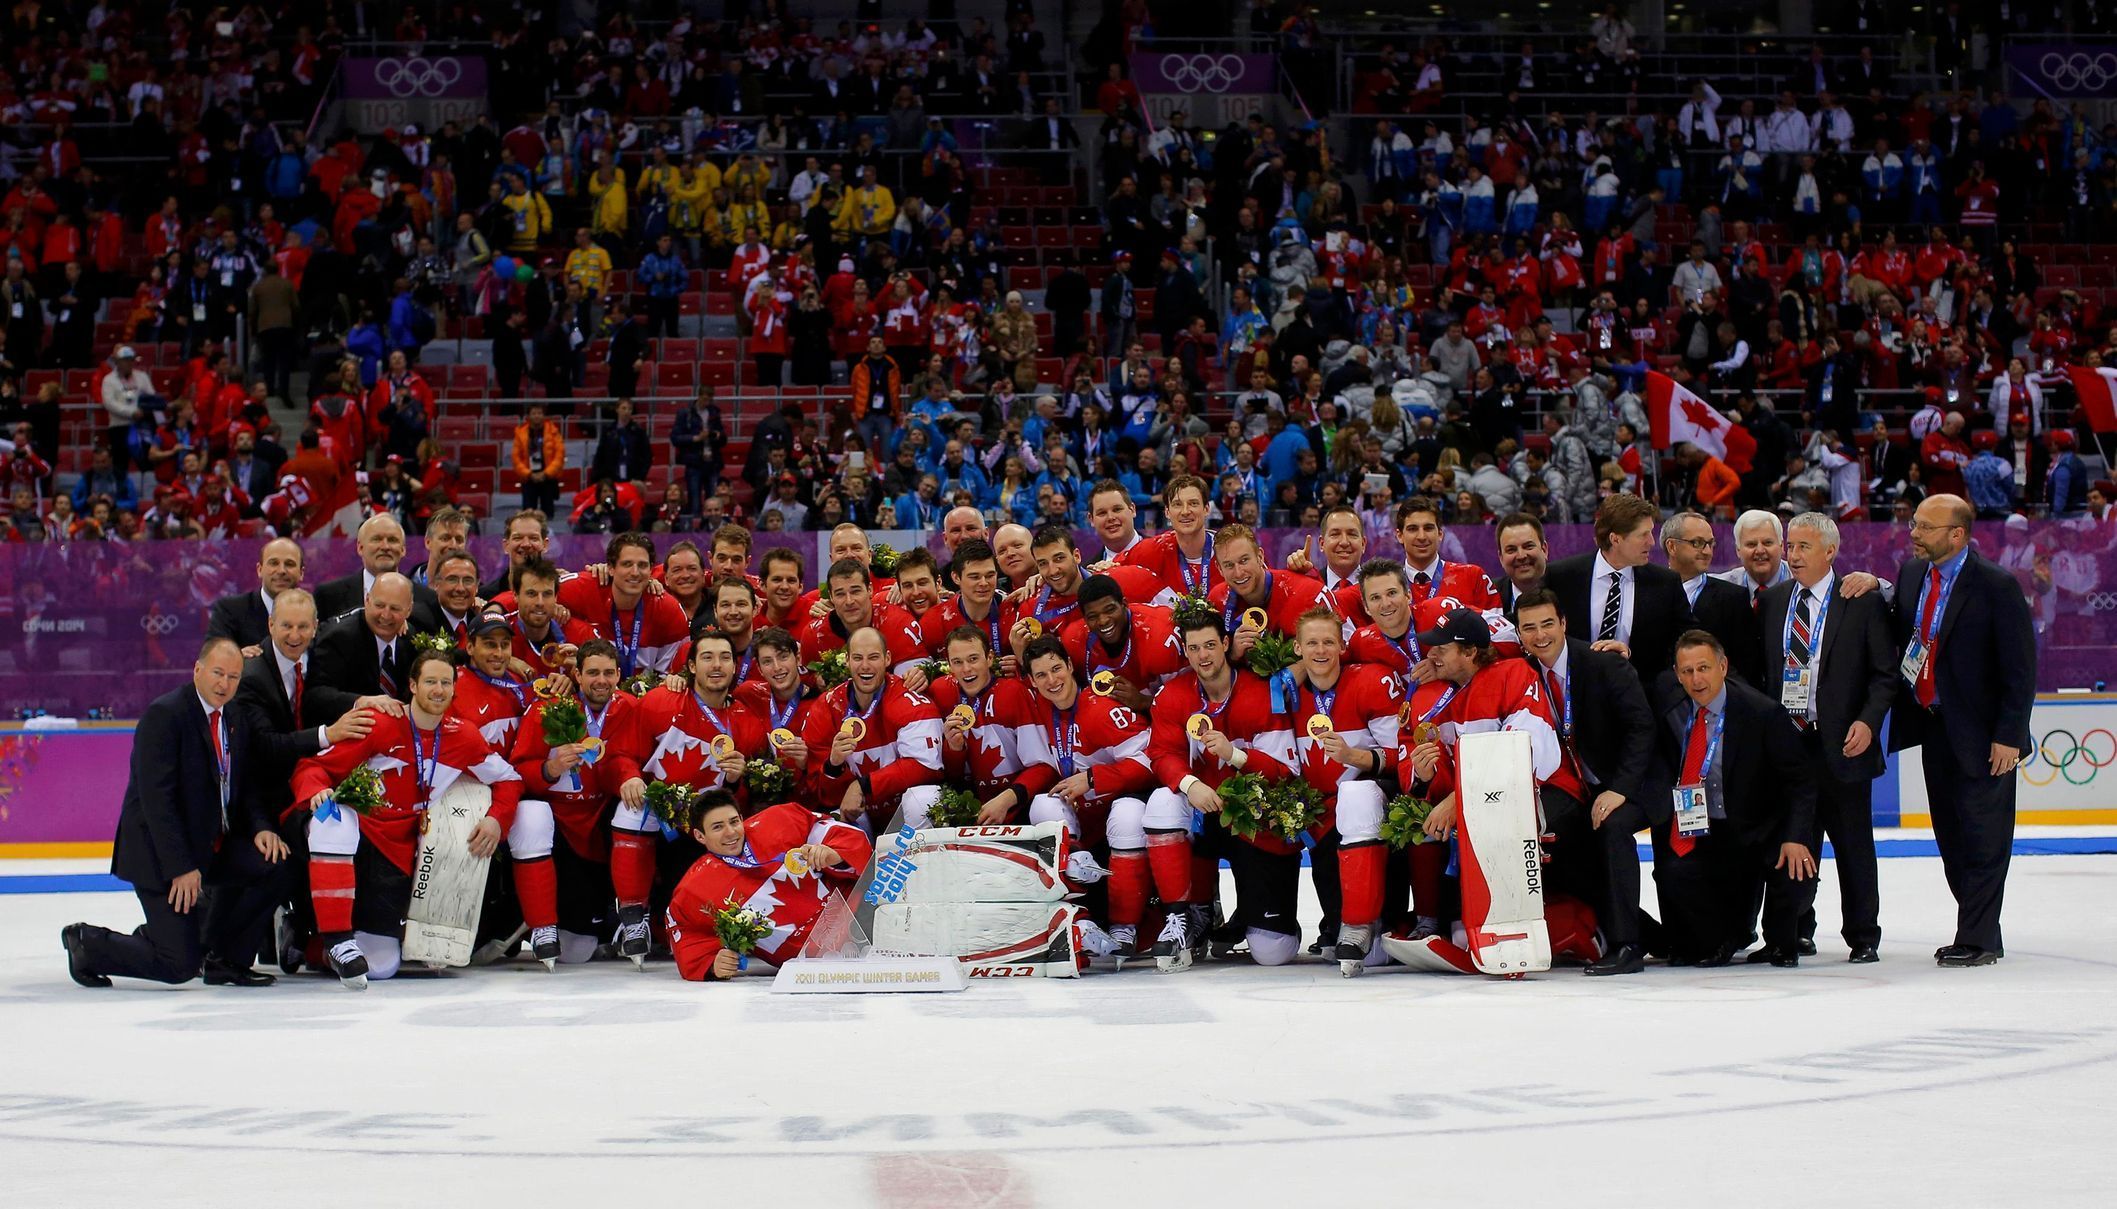 Kanada-Švédsko, finále: týmové foto olympijských vítězů z Kanady